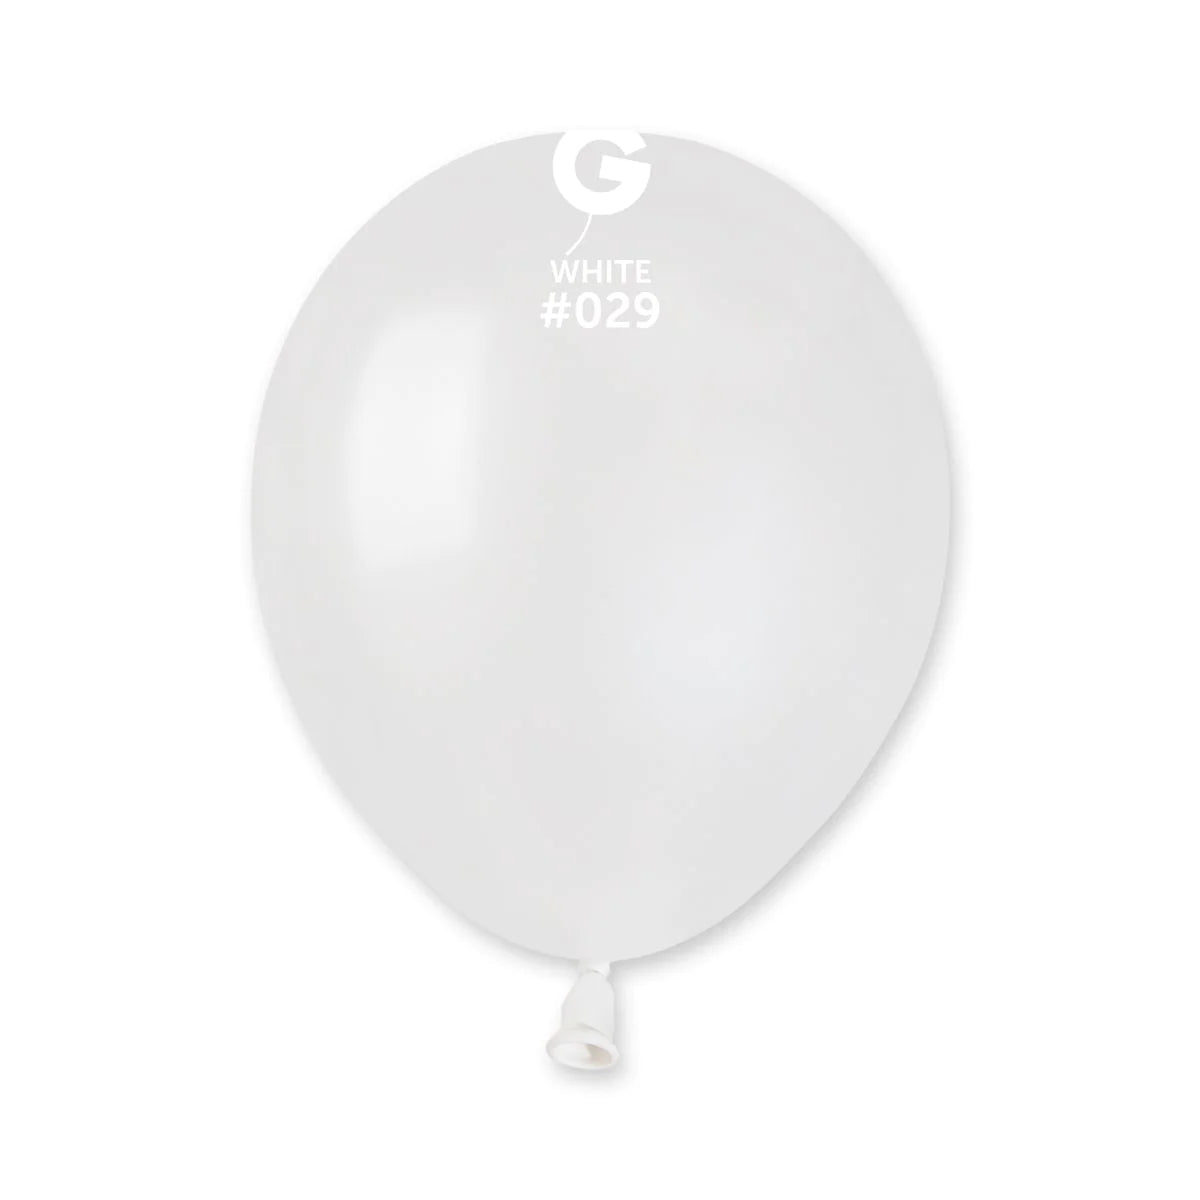 Metallic Balloon White #029 SIZE 5" 12" 19" 31"